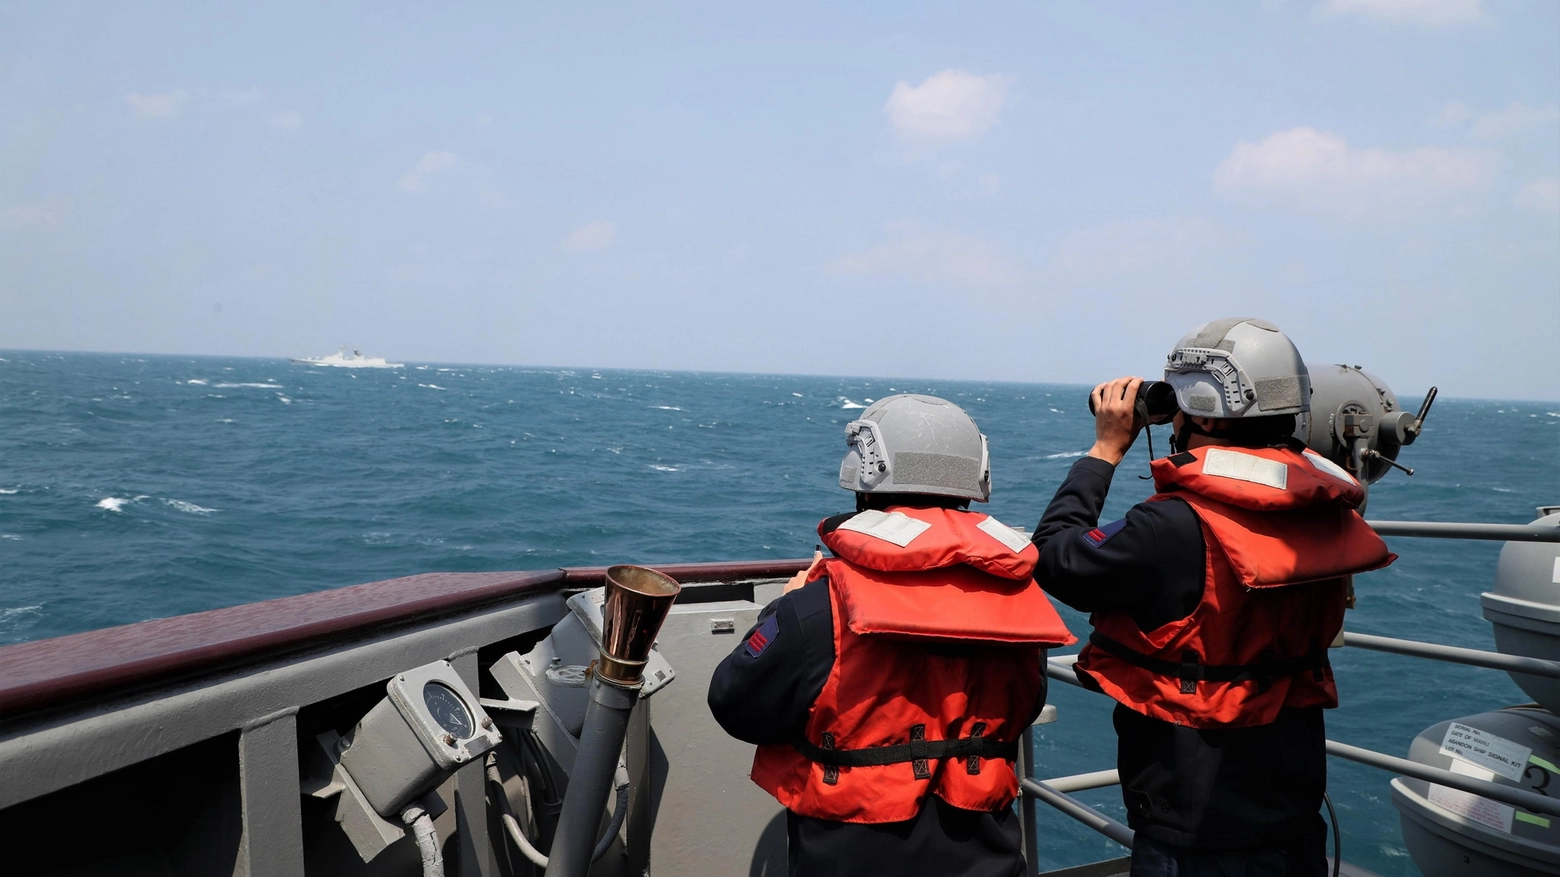 La marina militare di Taiwan sorveglia da lontano una motovedetta cinese